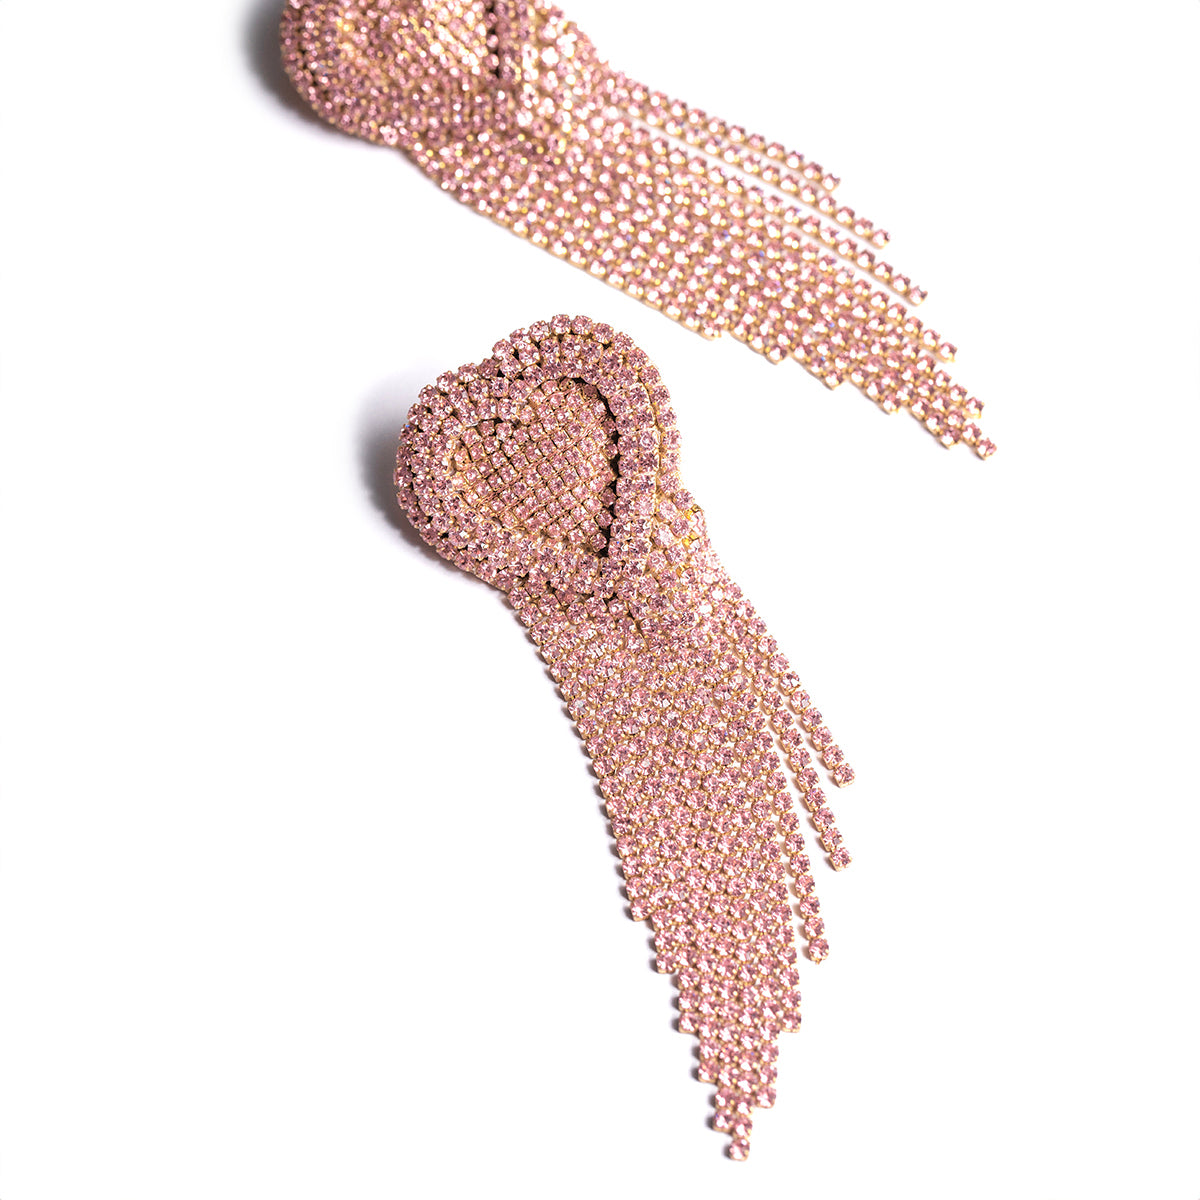 Deepa Gurnani handmade the Kaylie earrings in pink color